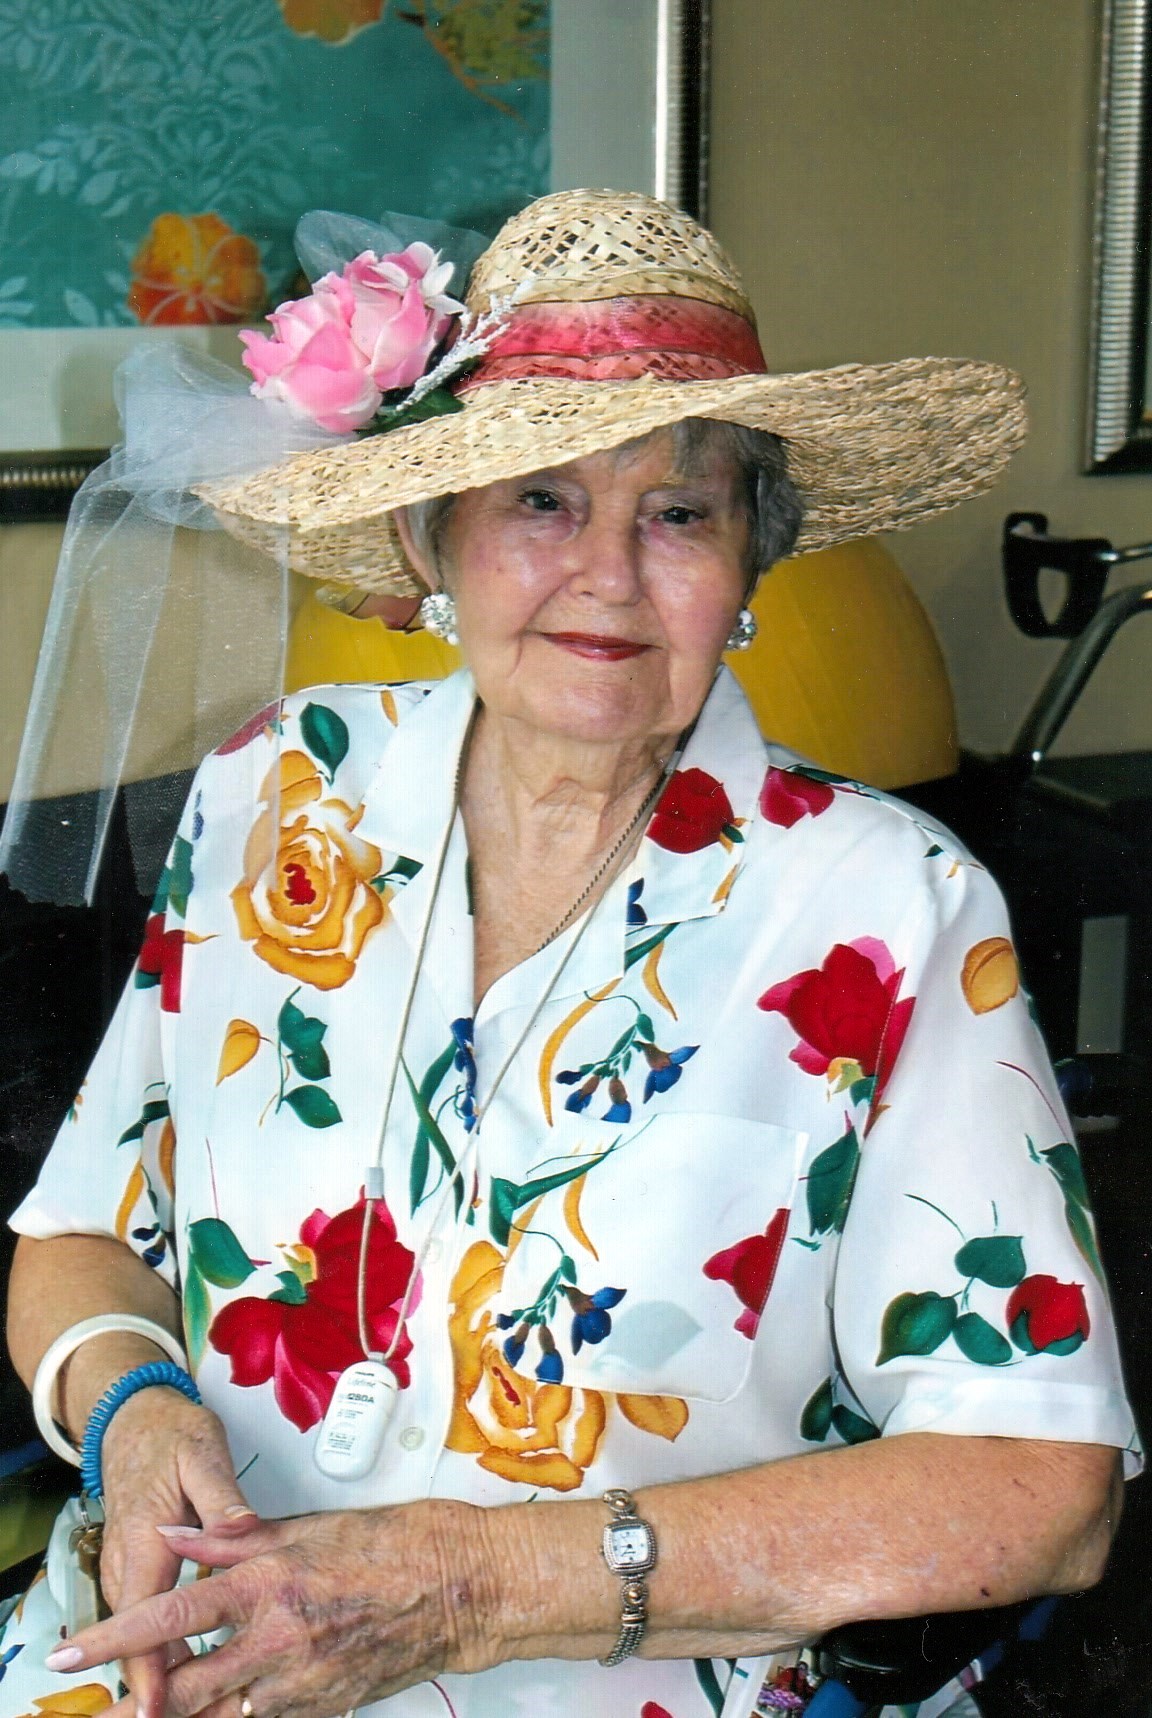 Obituary of Norma Jean Stroud - 19/12/2018 - De la famille